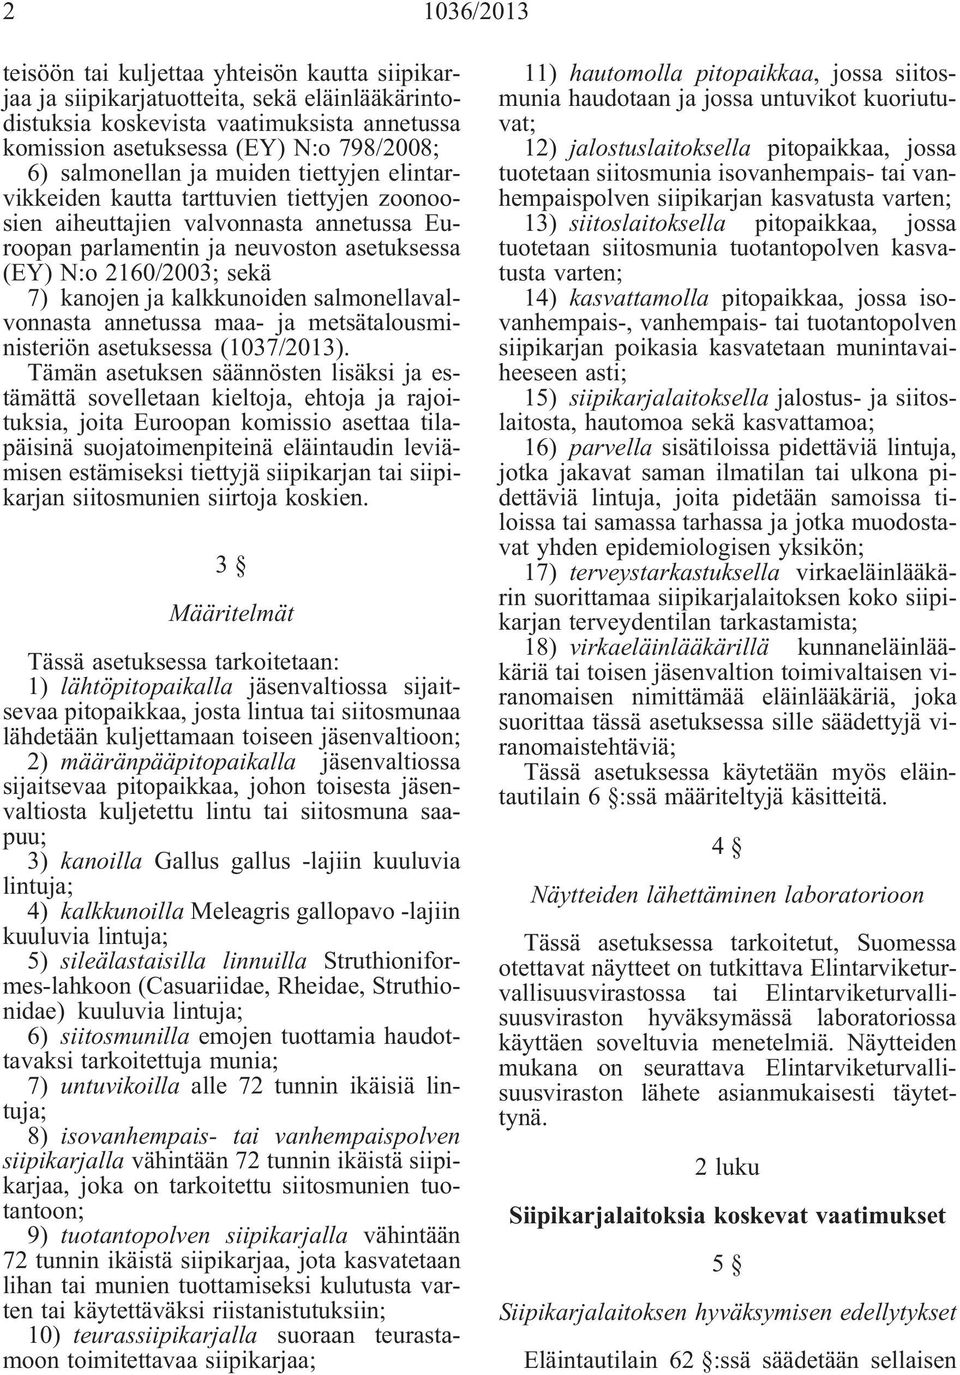 kanojen ja kalkkunoiden salmonellavalvonnasta annetussa maa- ja metsätalousministeriön asetuksessa (1037/2013).